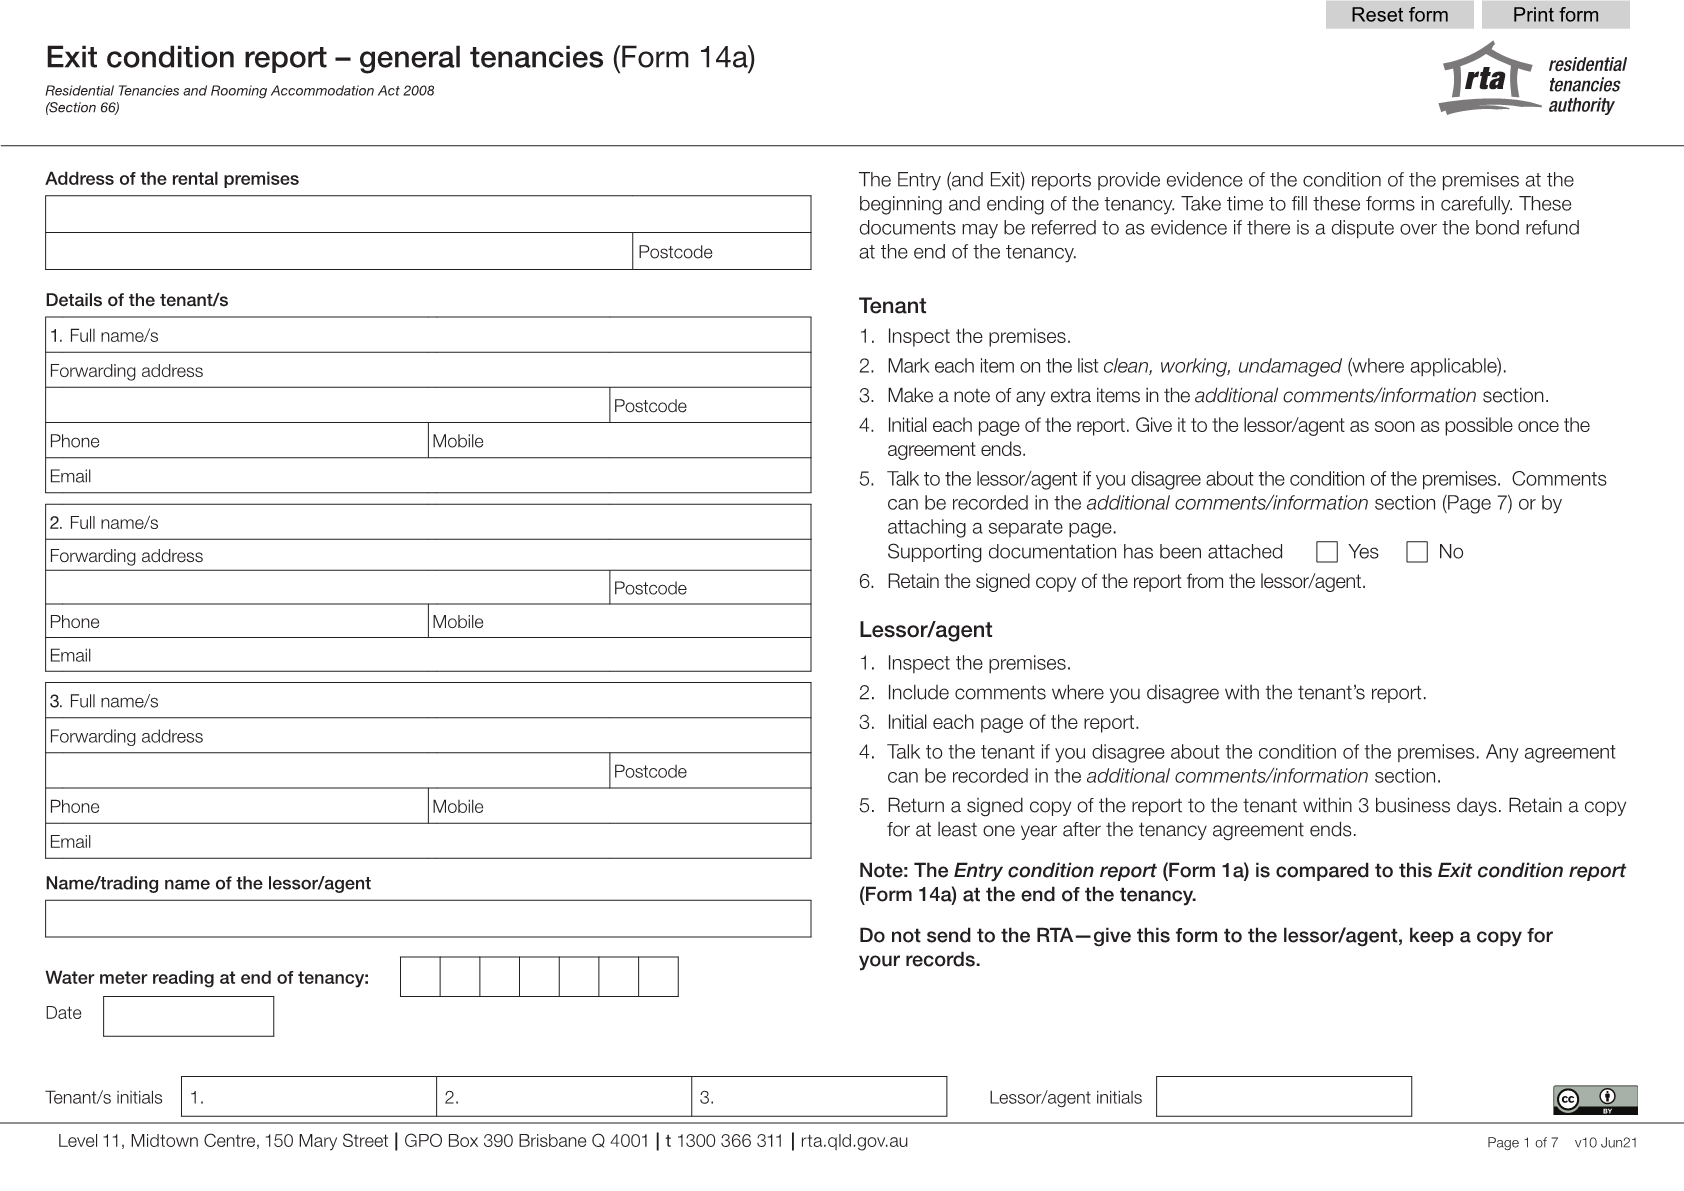 Form-14a-Exit-condition-report-general-tenancies1